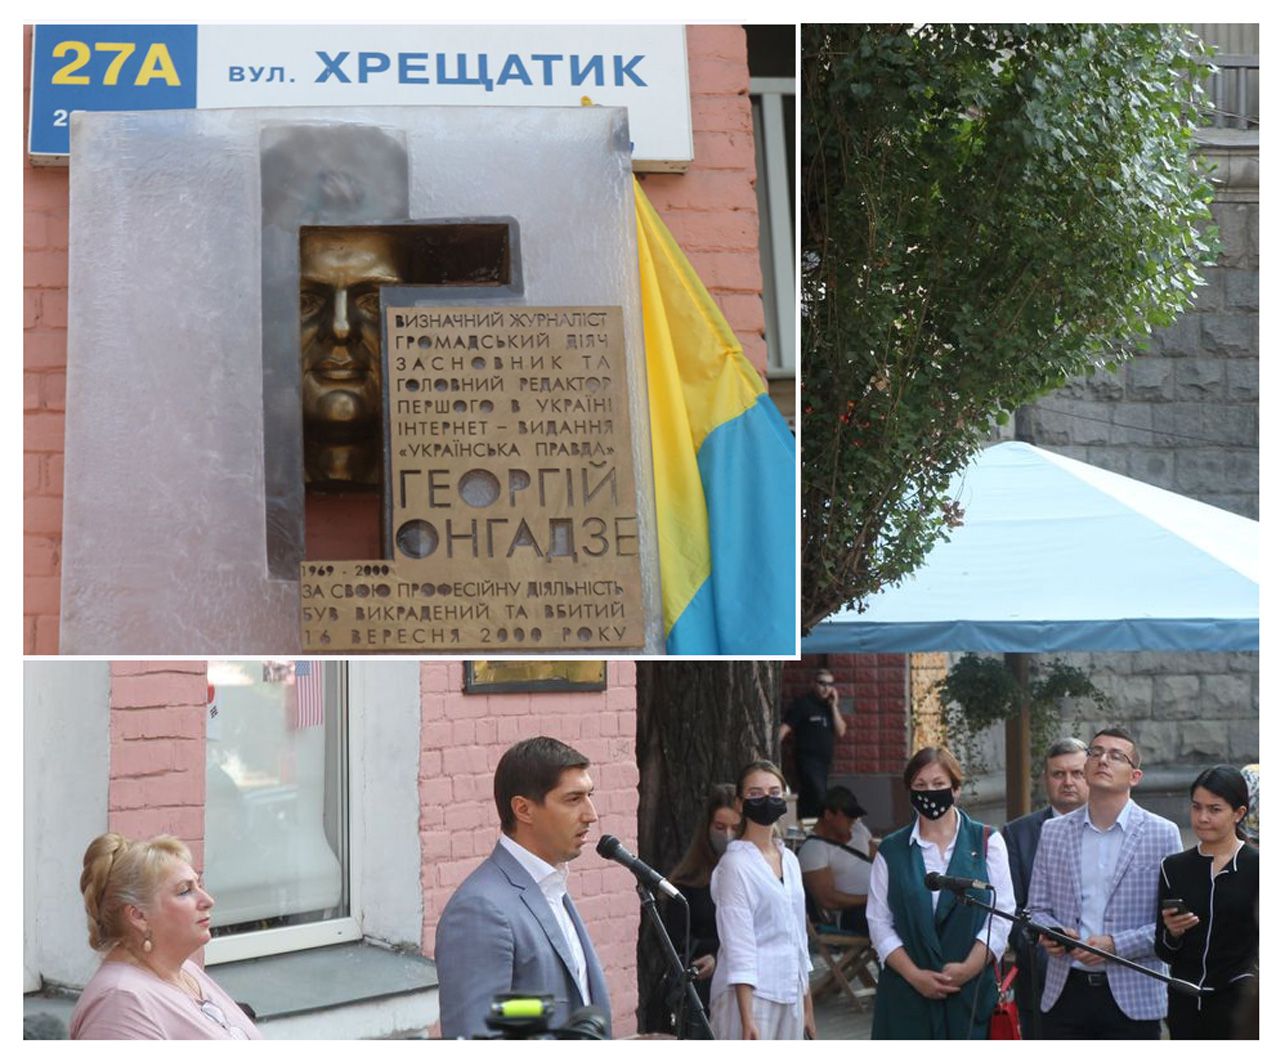 У Києві на Хрещатику відкрили меморіальну дошку на честь Георгія Гонгадзе